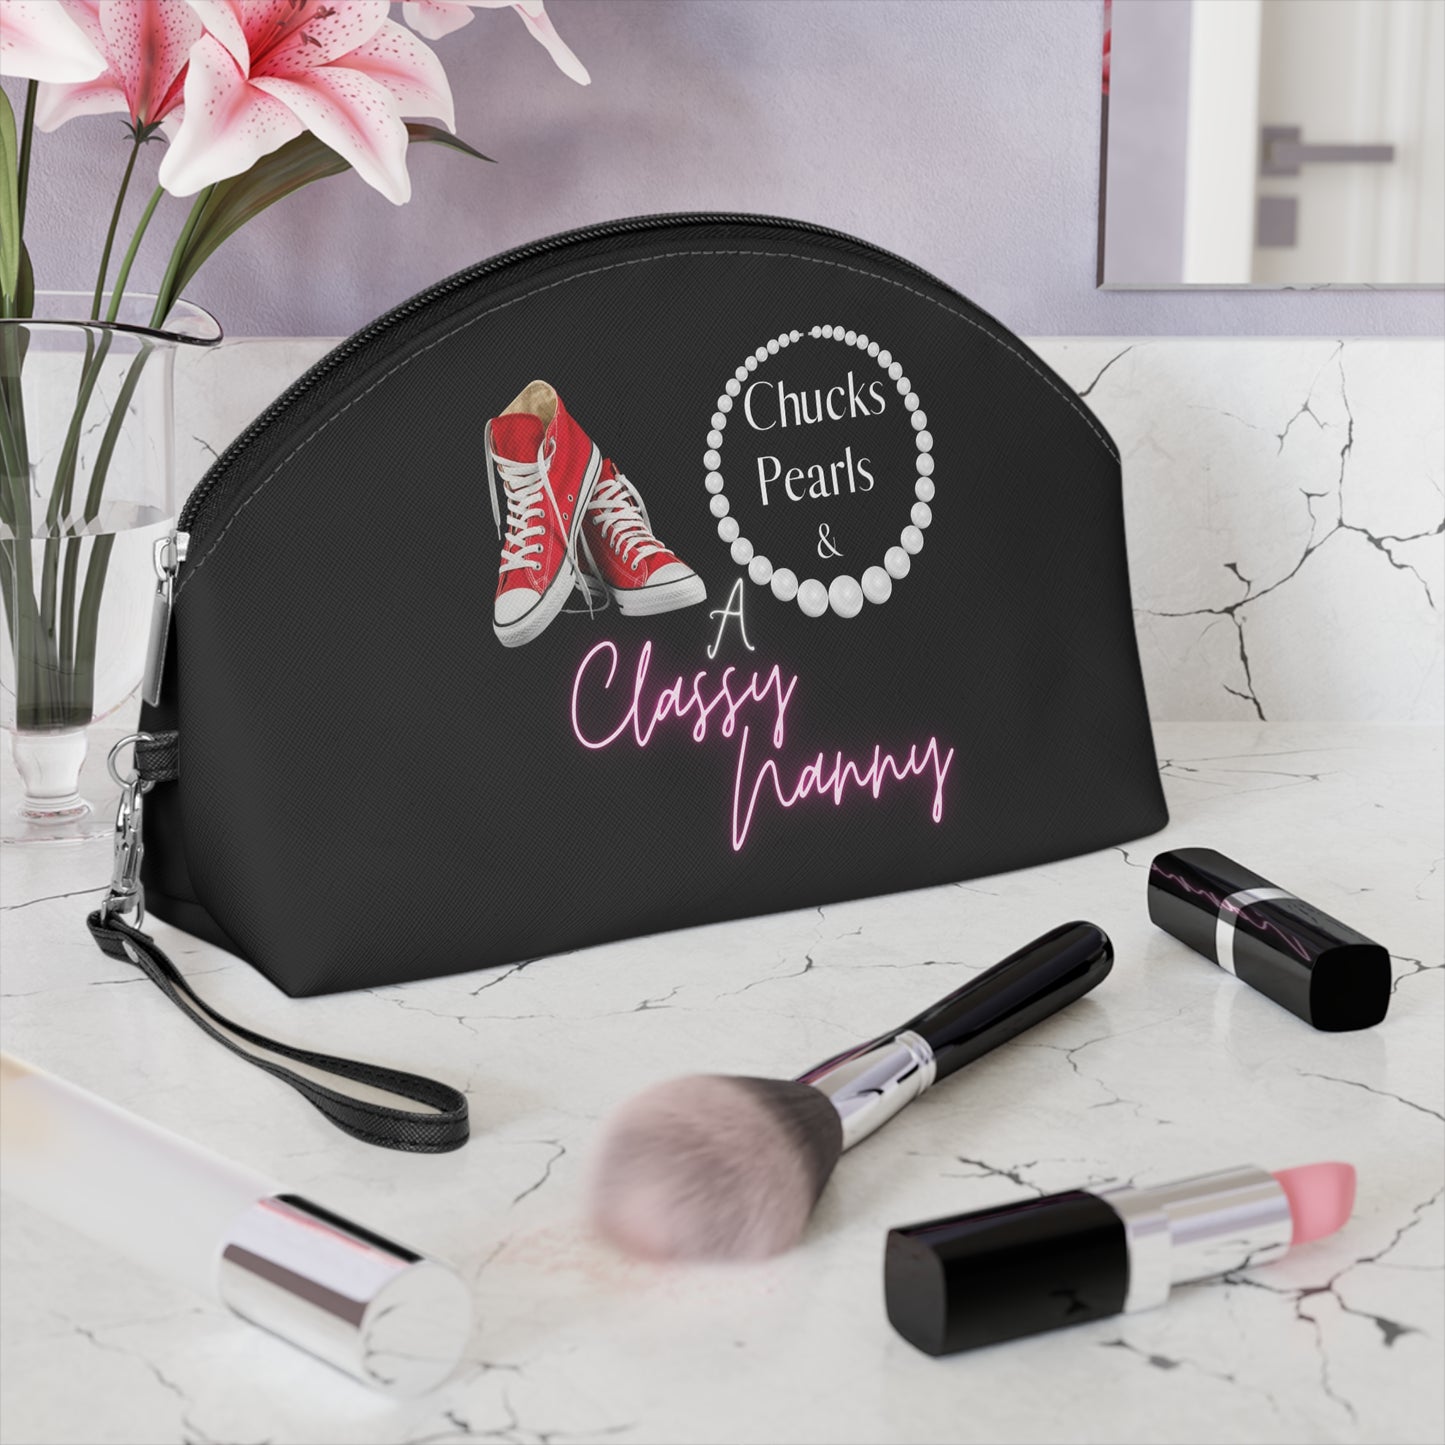 "Chucks, Pearls, and a Classy Nanny" Makeup Bag